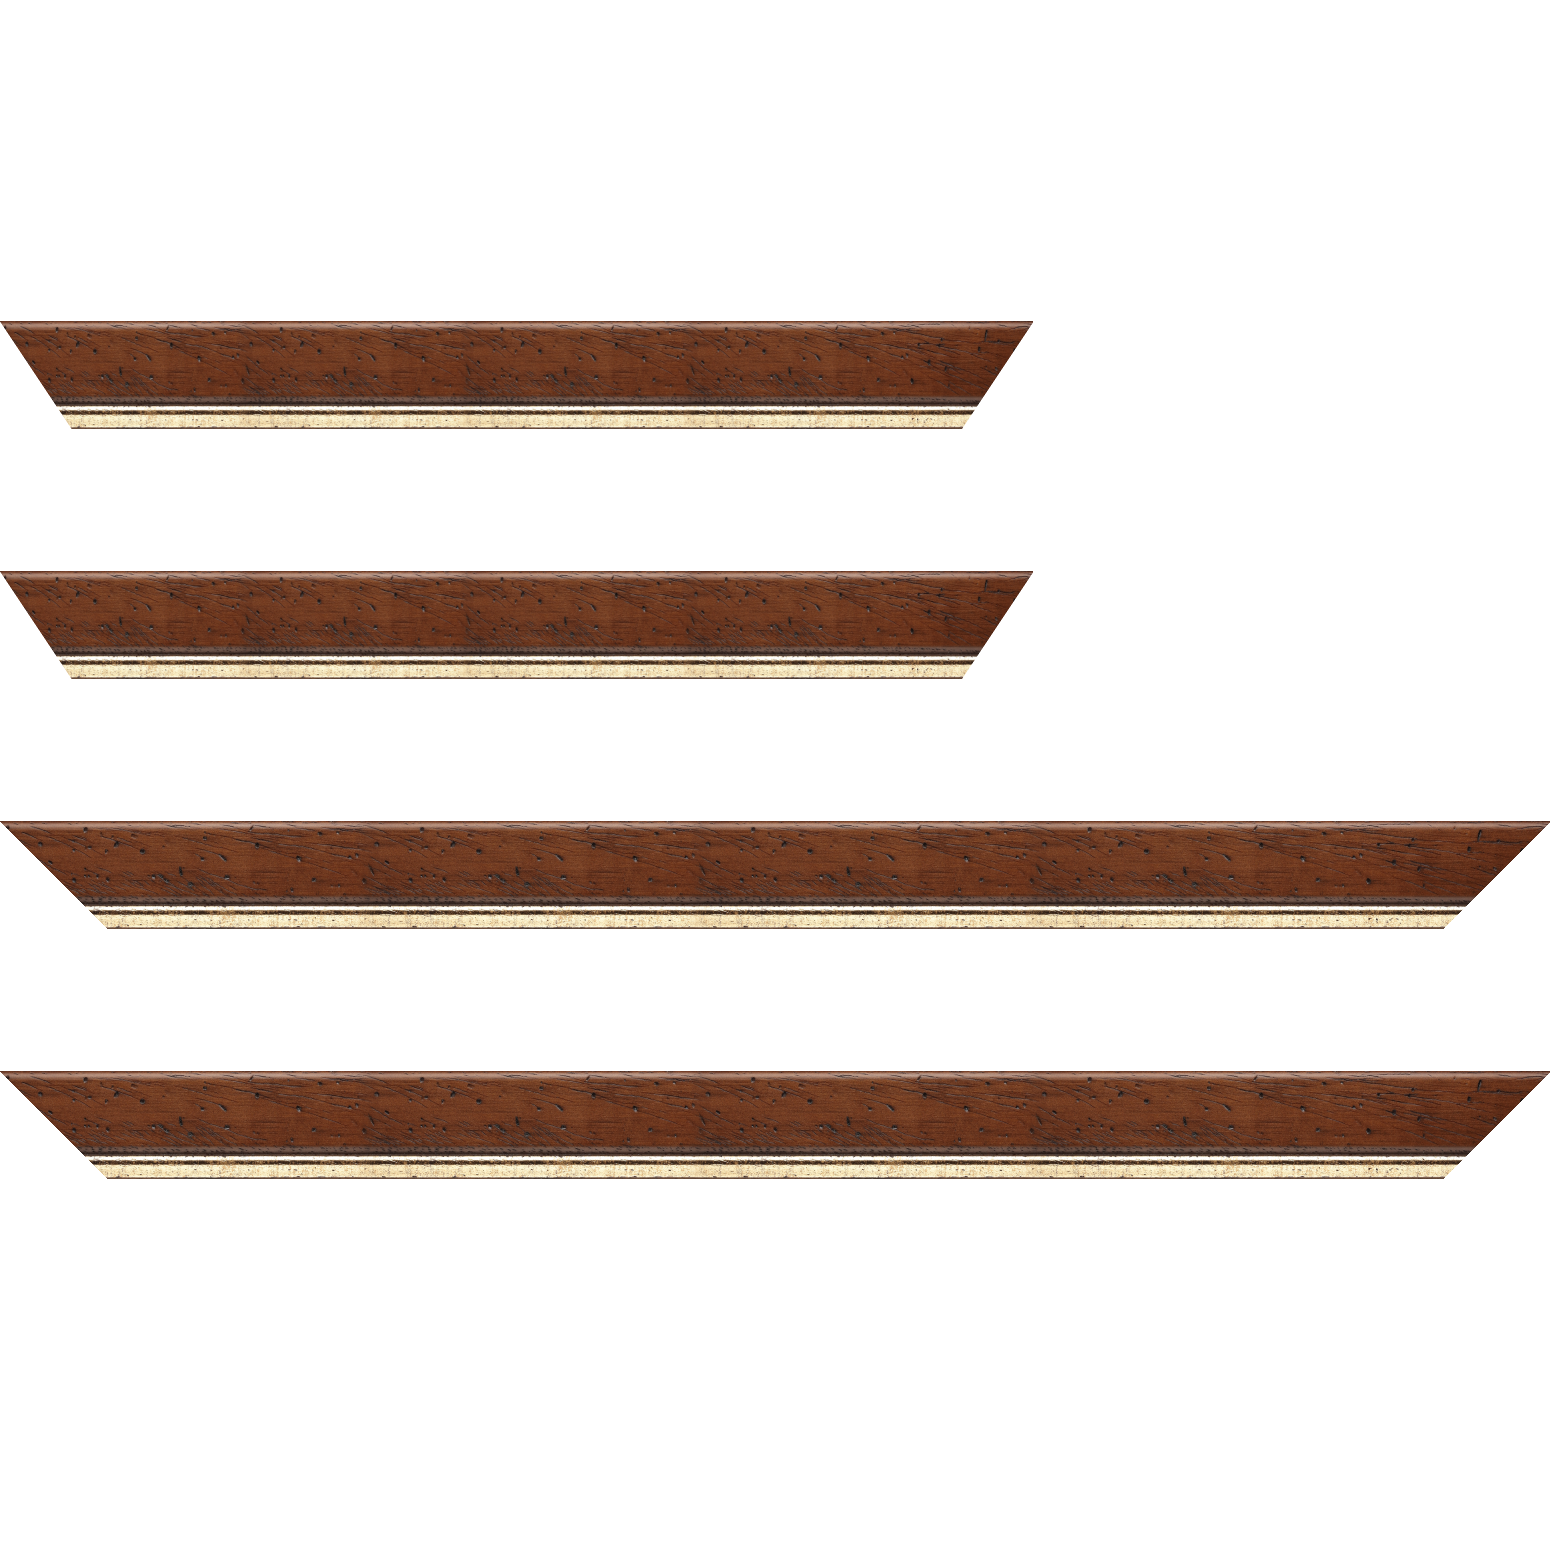 Baguette bois profil arrondi largeur 3.5cm marron satiné classique filet or - 25x25